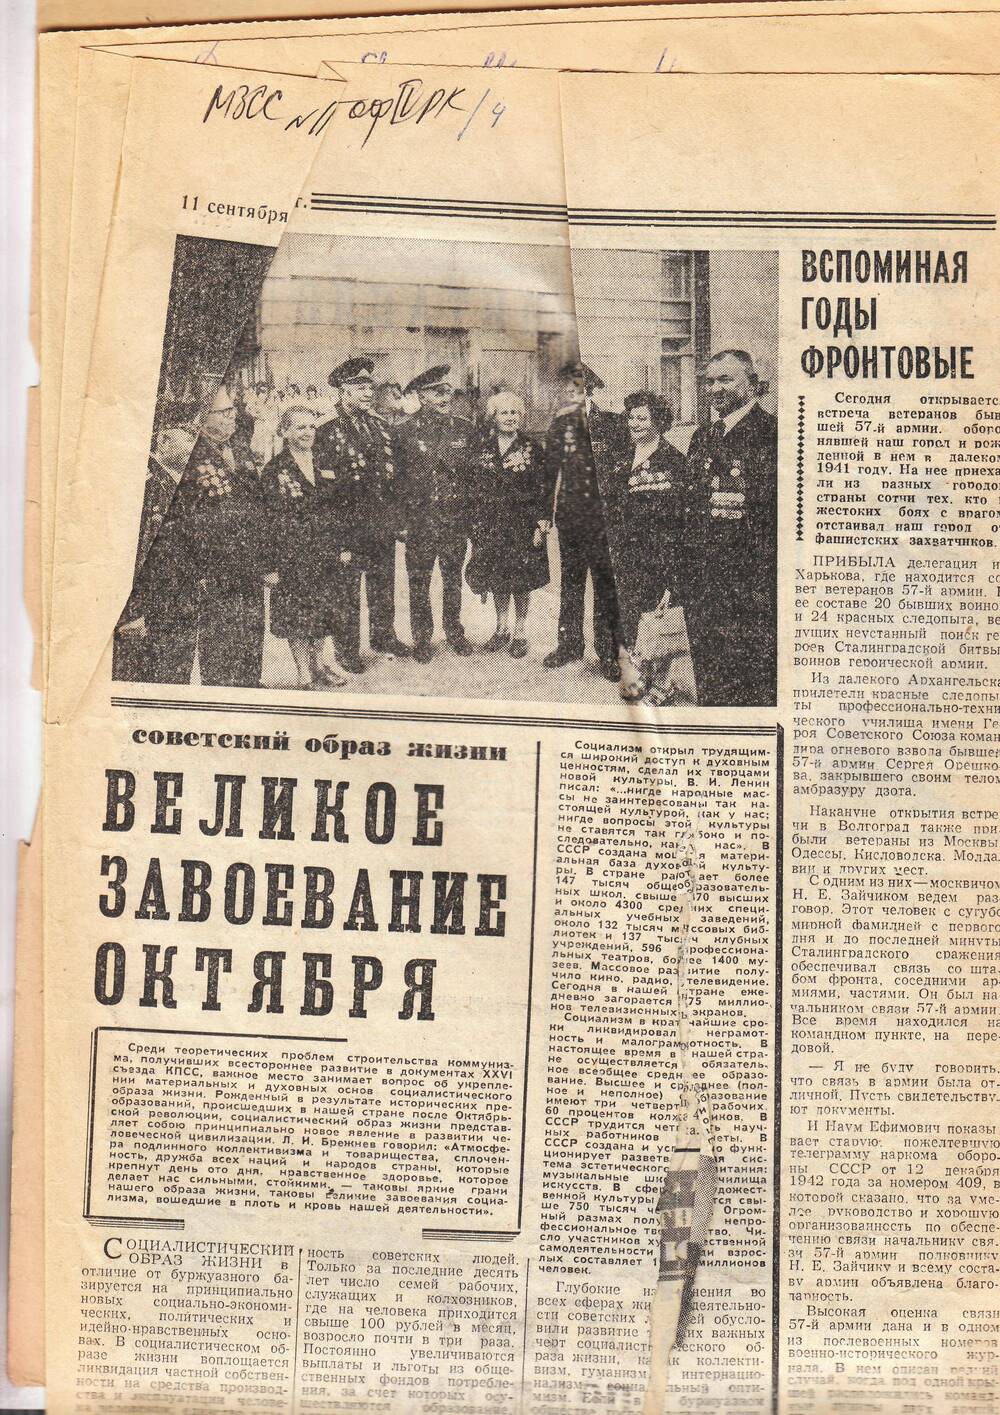 Газета «Волгоградская правда» №210 (18998) пятница 11 сентября 1981г. на 3-й странице статья «Вспоминая годы фронтовые»